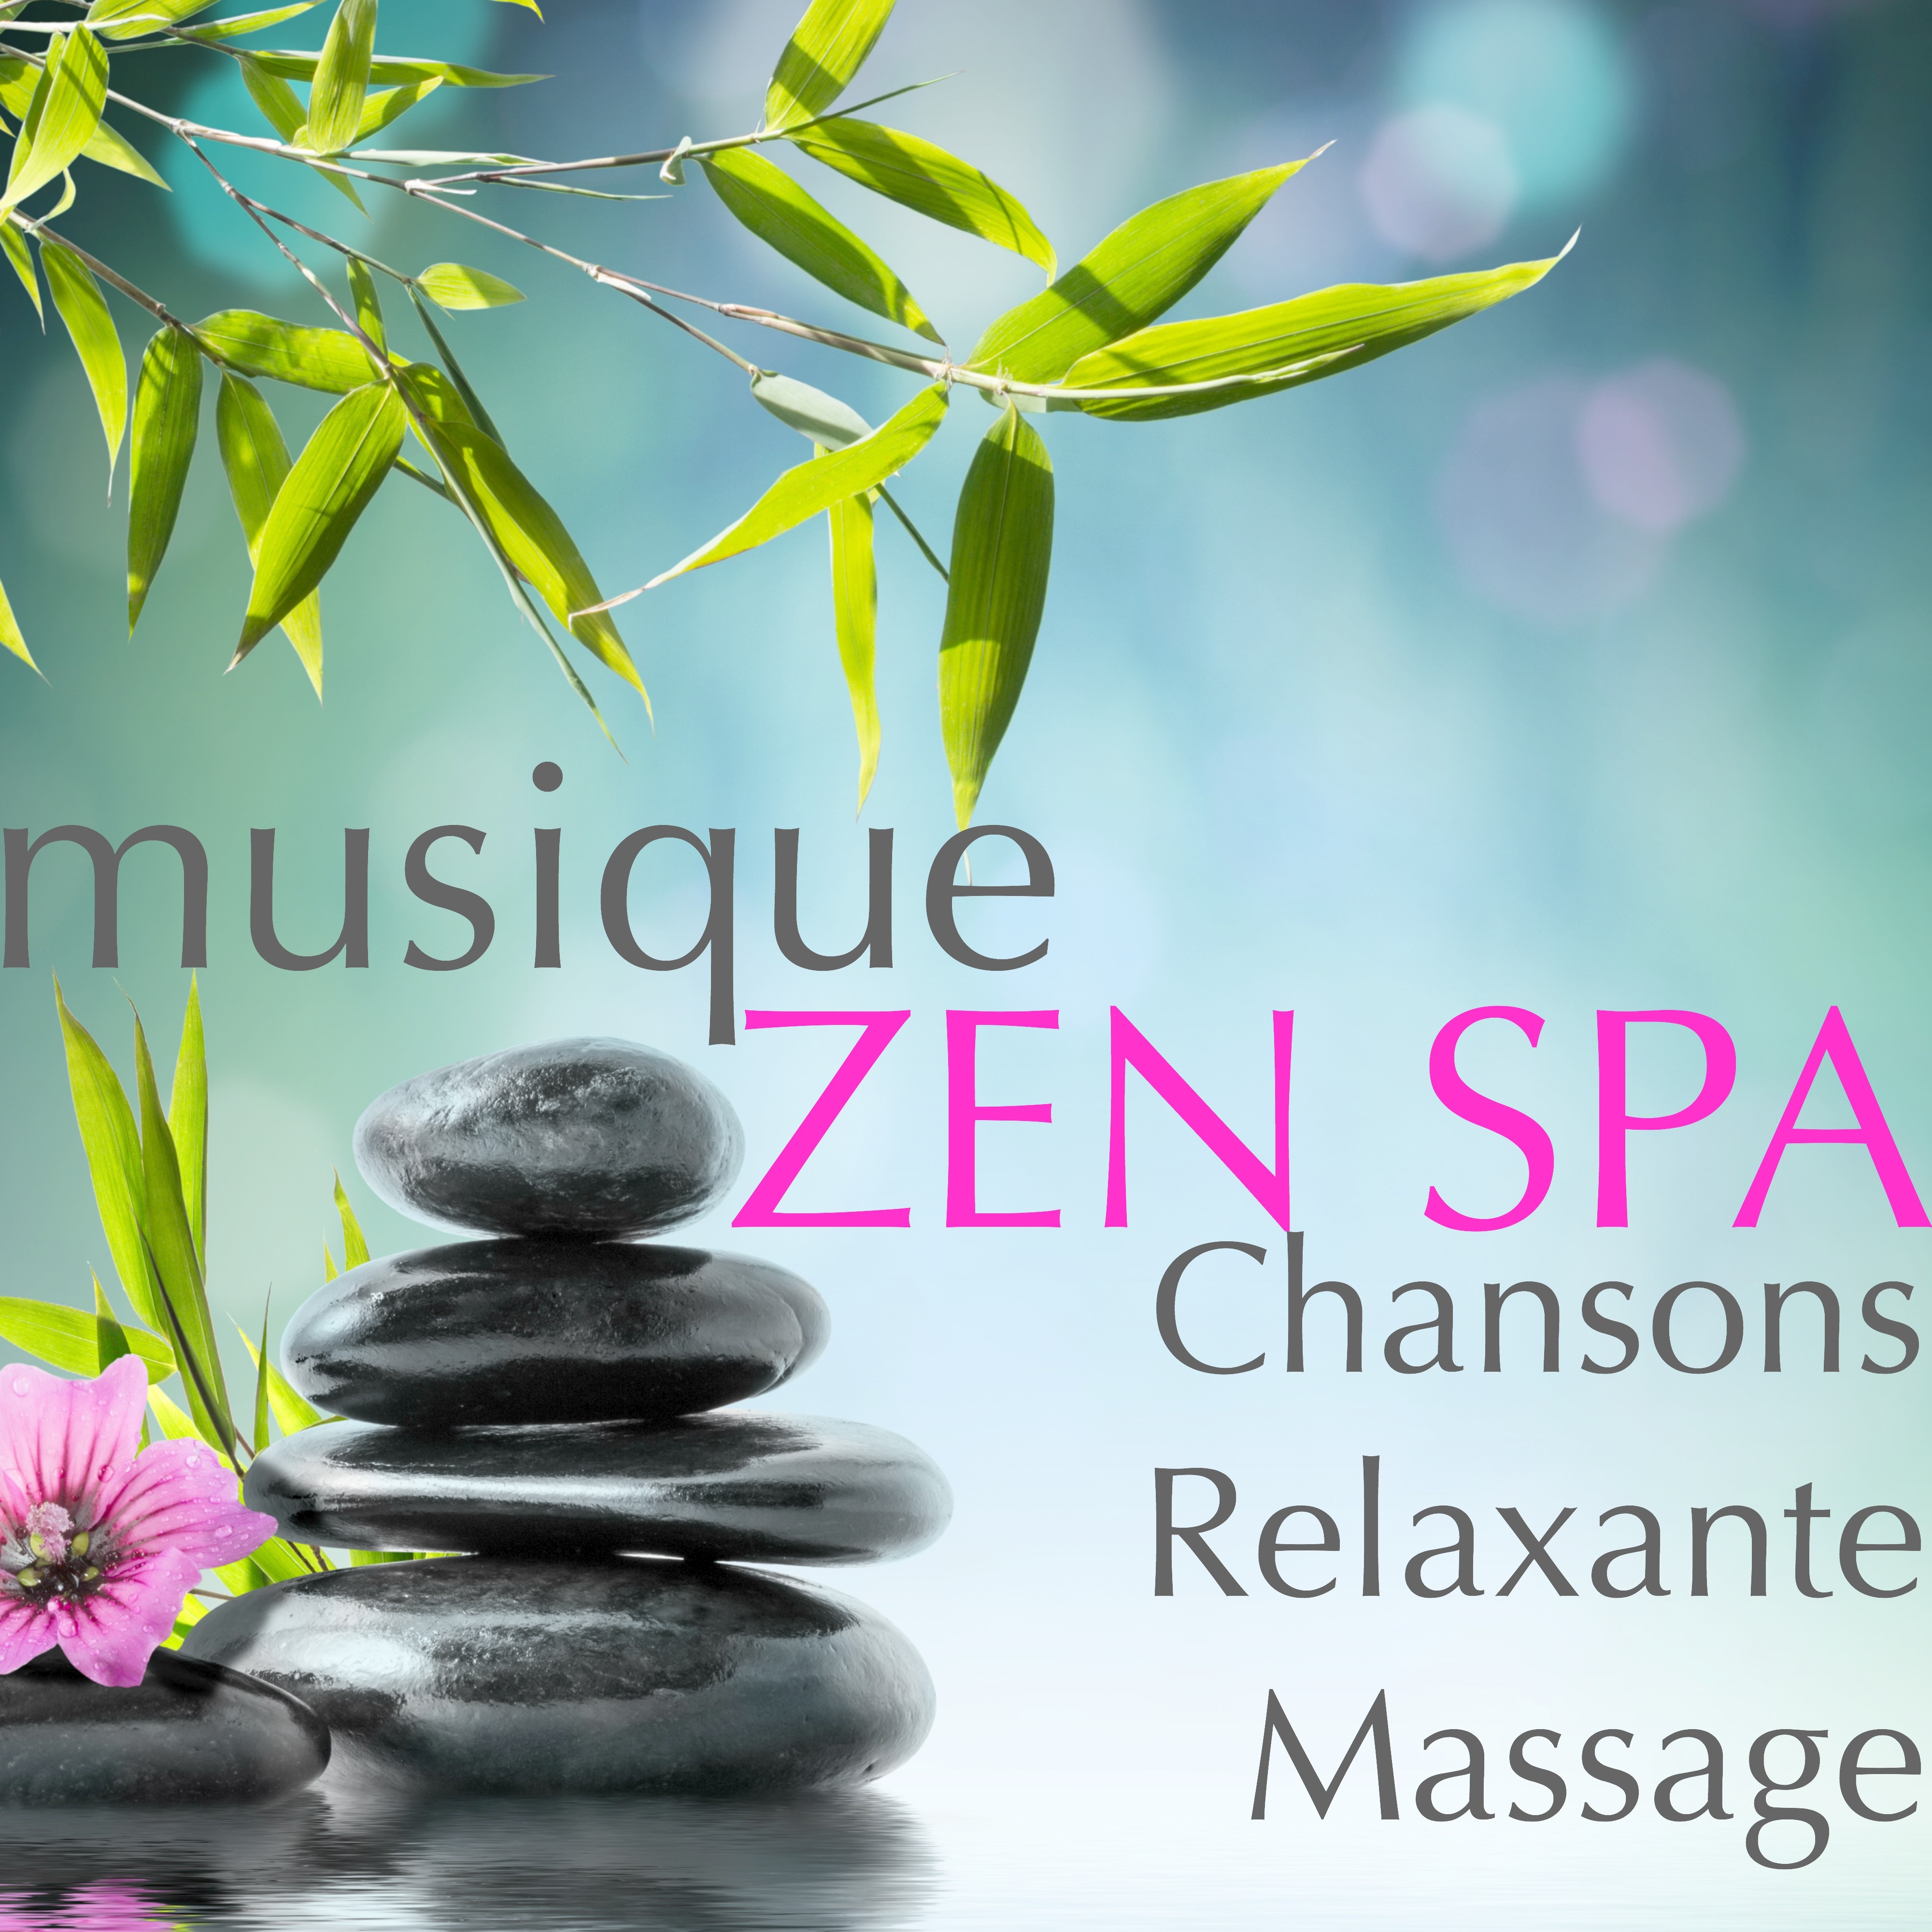 Musique Zen Spa – Chansons Relaxante Massage pour votre Détente et Bien-être, Musique Asiatique pour Méditer